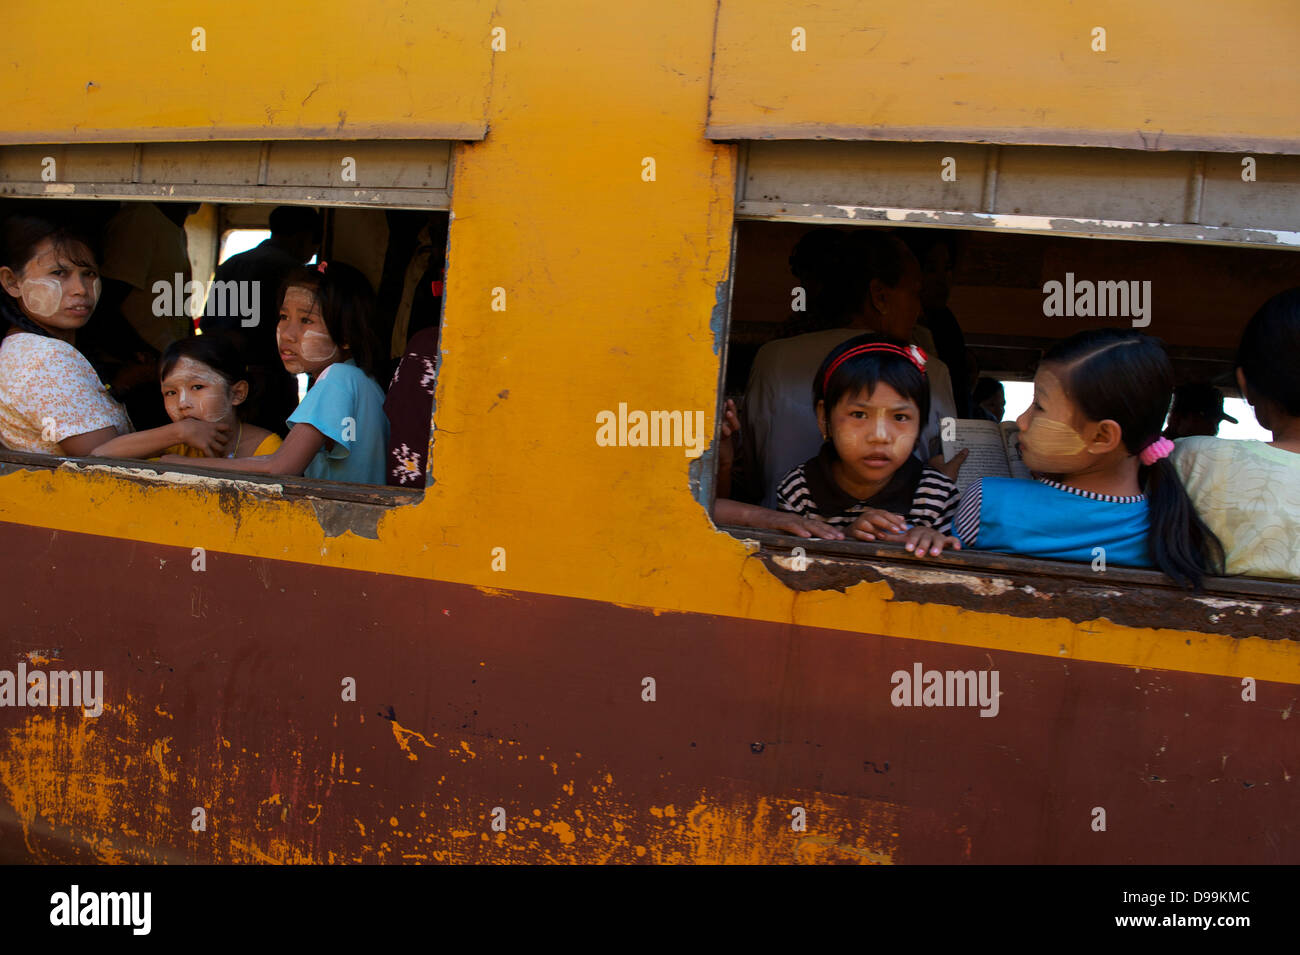 Yangon train passengers Stock Photo